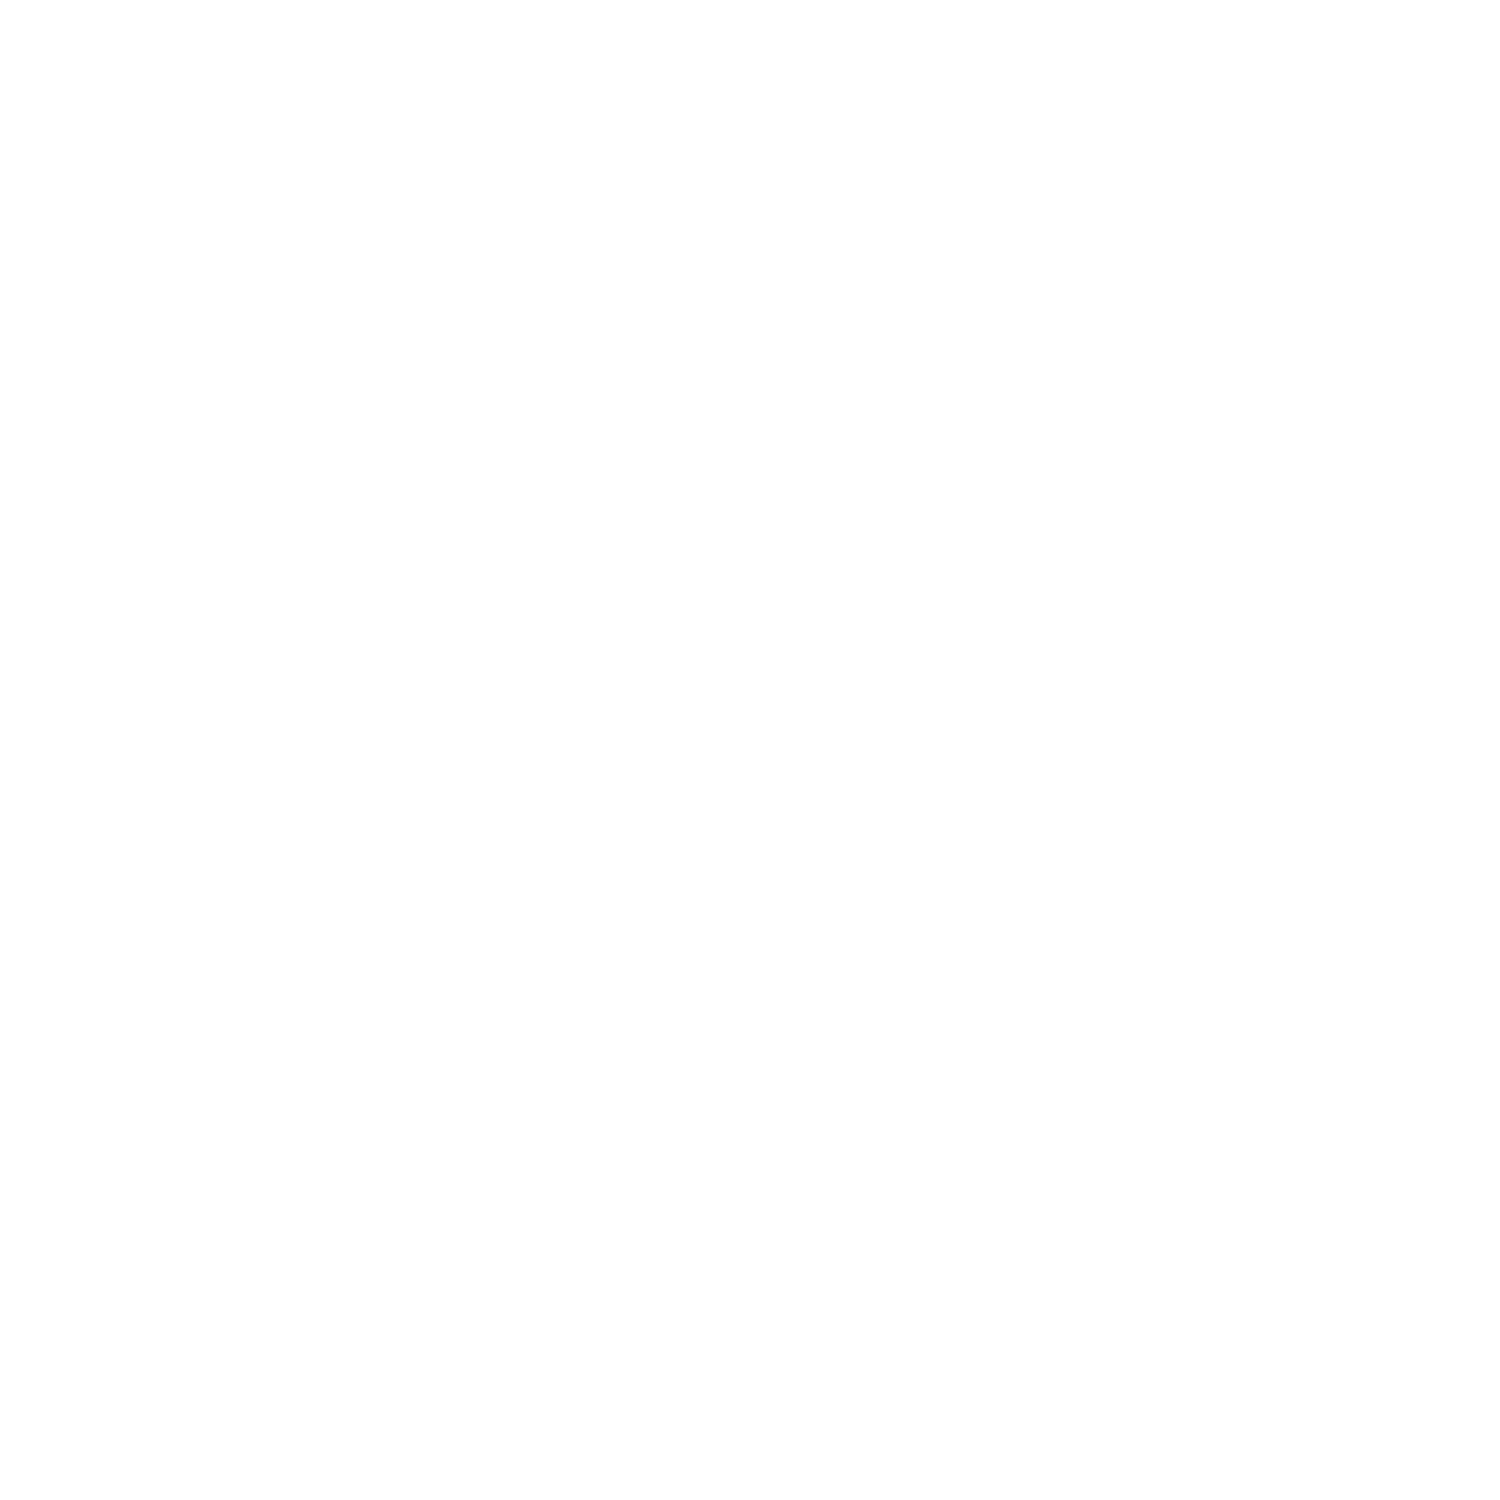 Berly